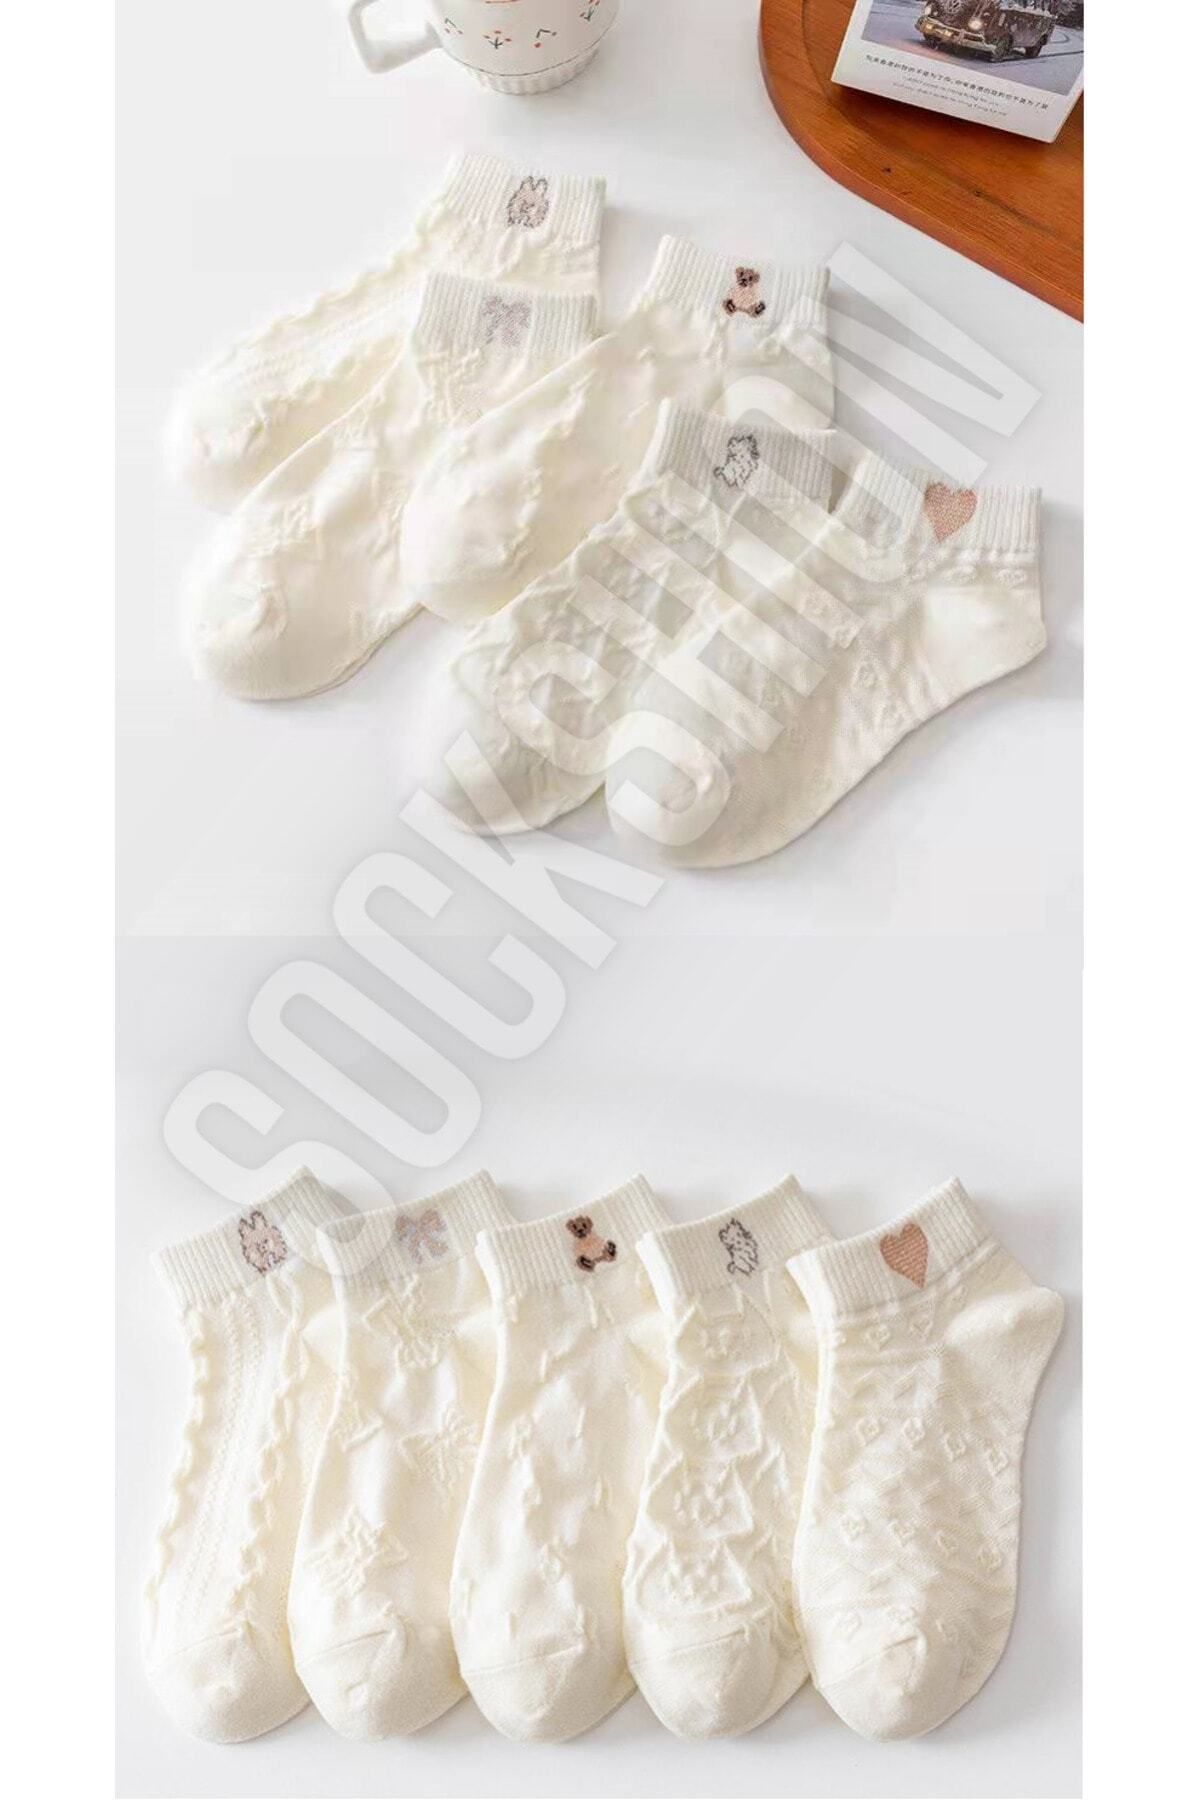 SOCKSHION Kadın Ters Örgü Desenli Patik Çorap 5'li - Şık Ve Rahat Özel Tasarım